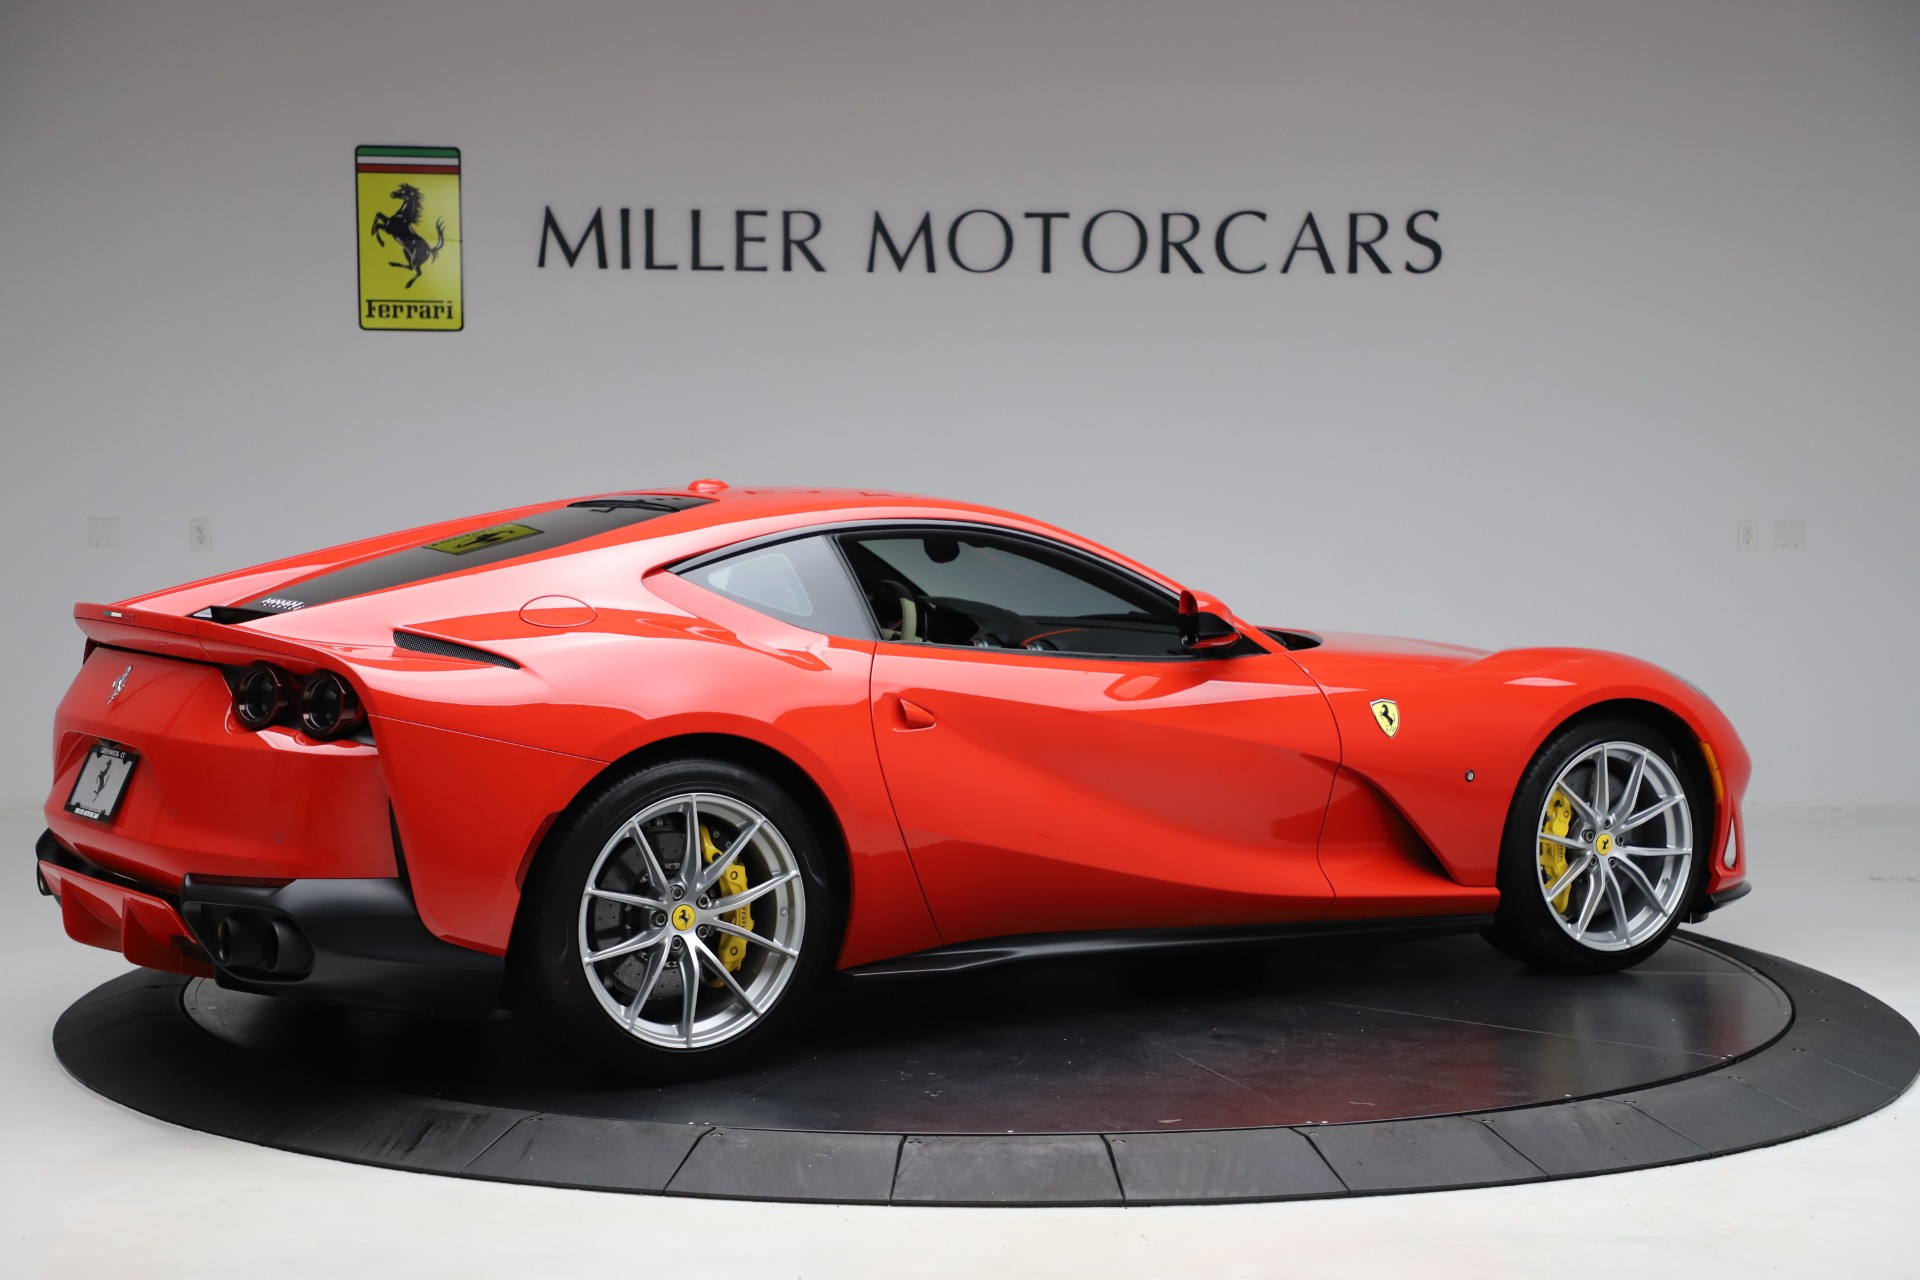 Pre-Owned 2019 Ferrari 812 Superfast For Sale ($365,900) | Miller Motorcars Stock #4668